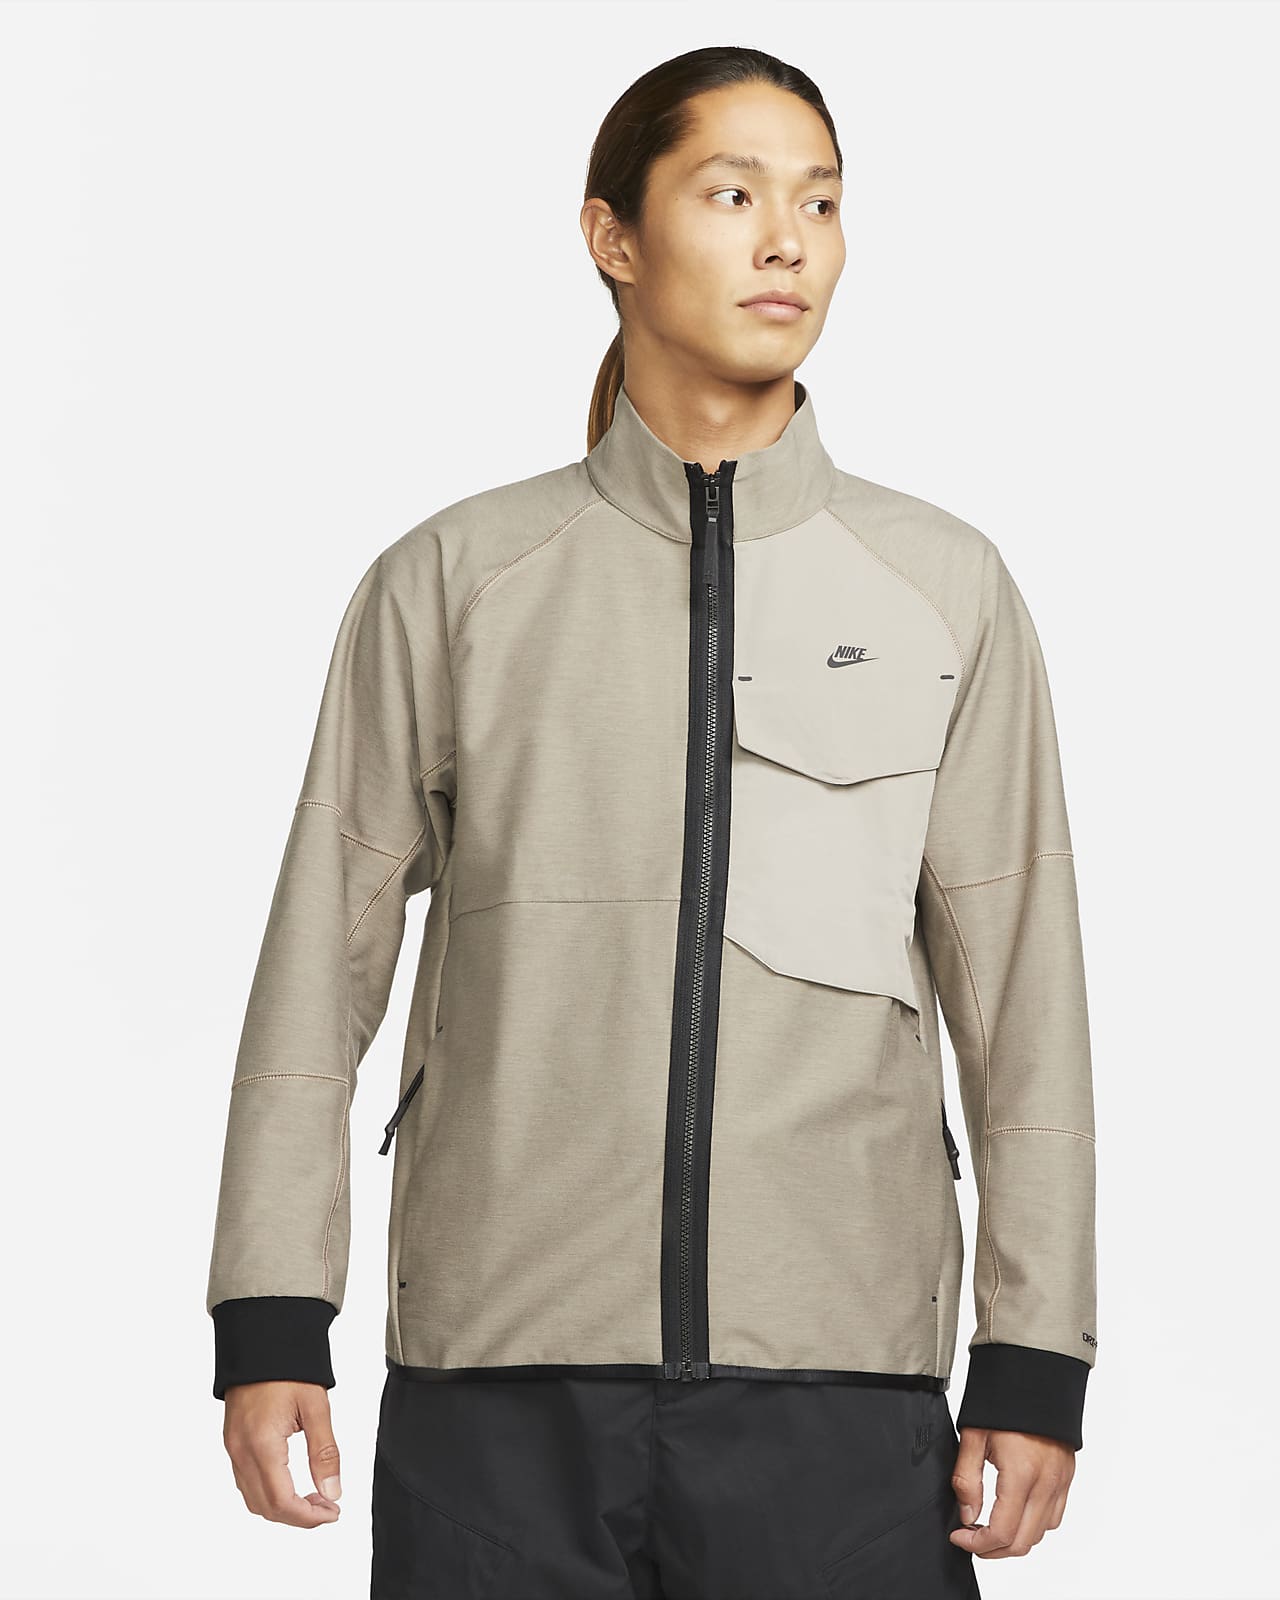 Nike Sportswear Dri-FIT Tech Pack Men's Unlined Tracksuit Jacket